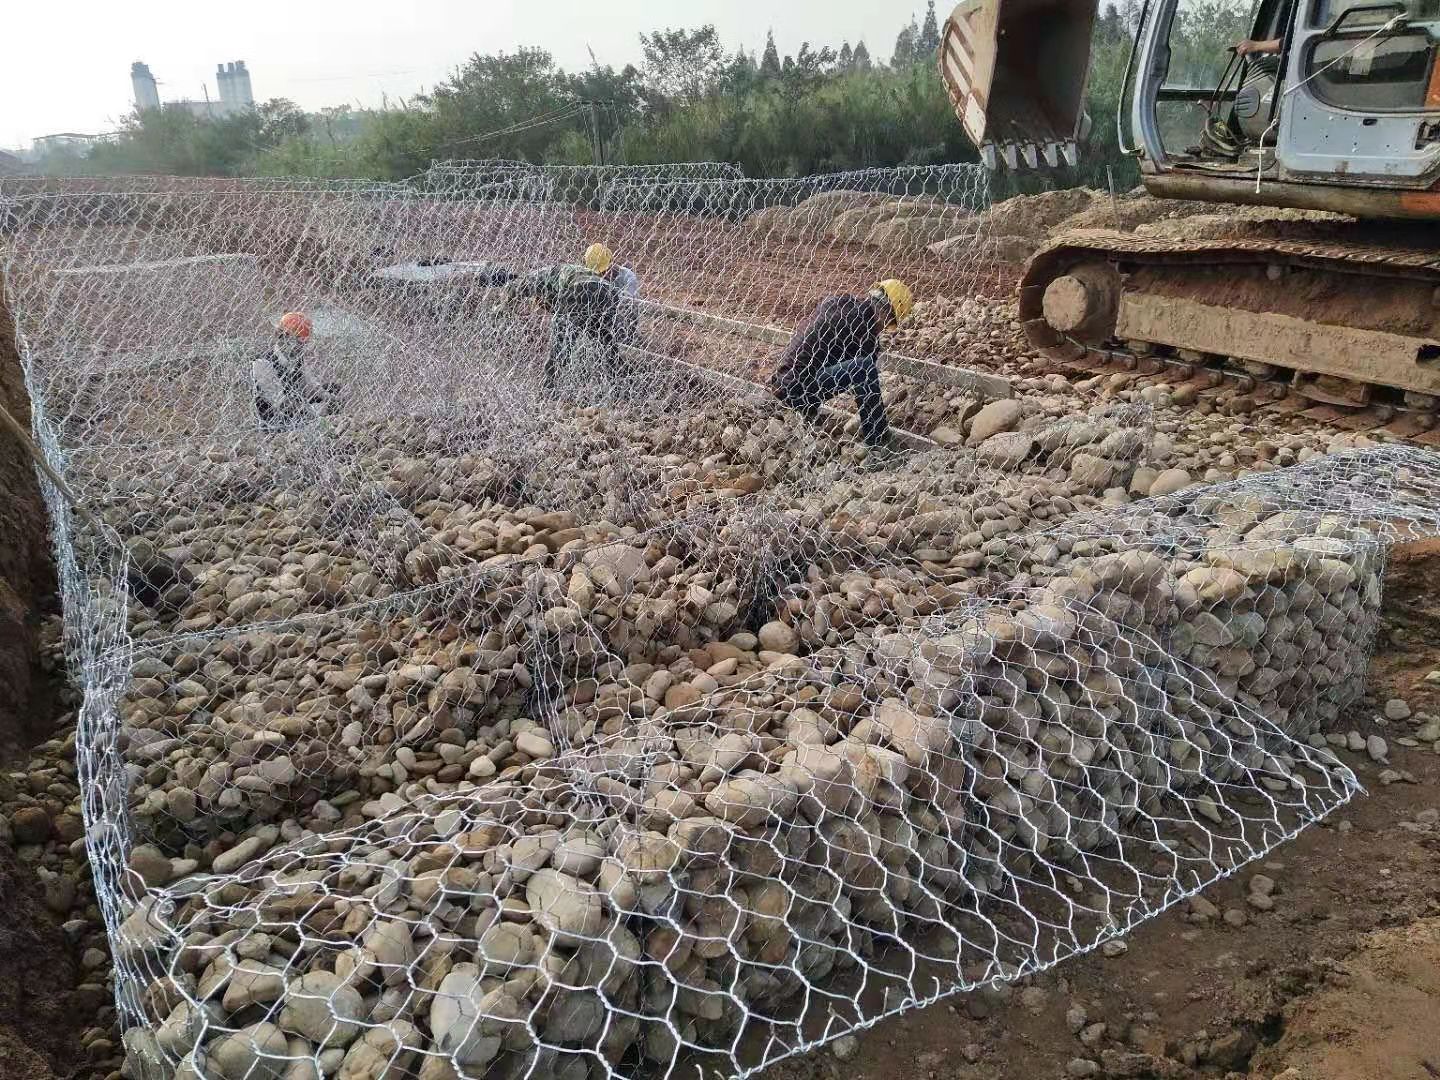 格宾石笼网 镀锌石笼网 堤坡防护铅丝石笼格宾石笼网铅丝石笼网箱